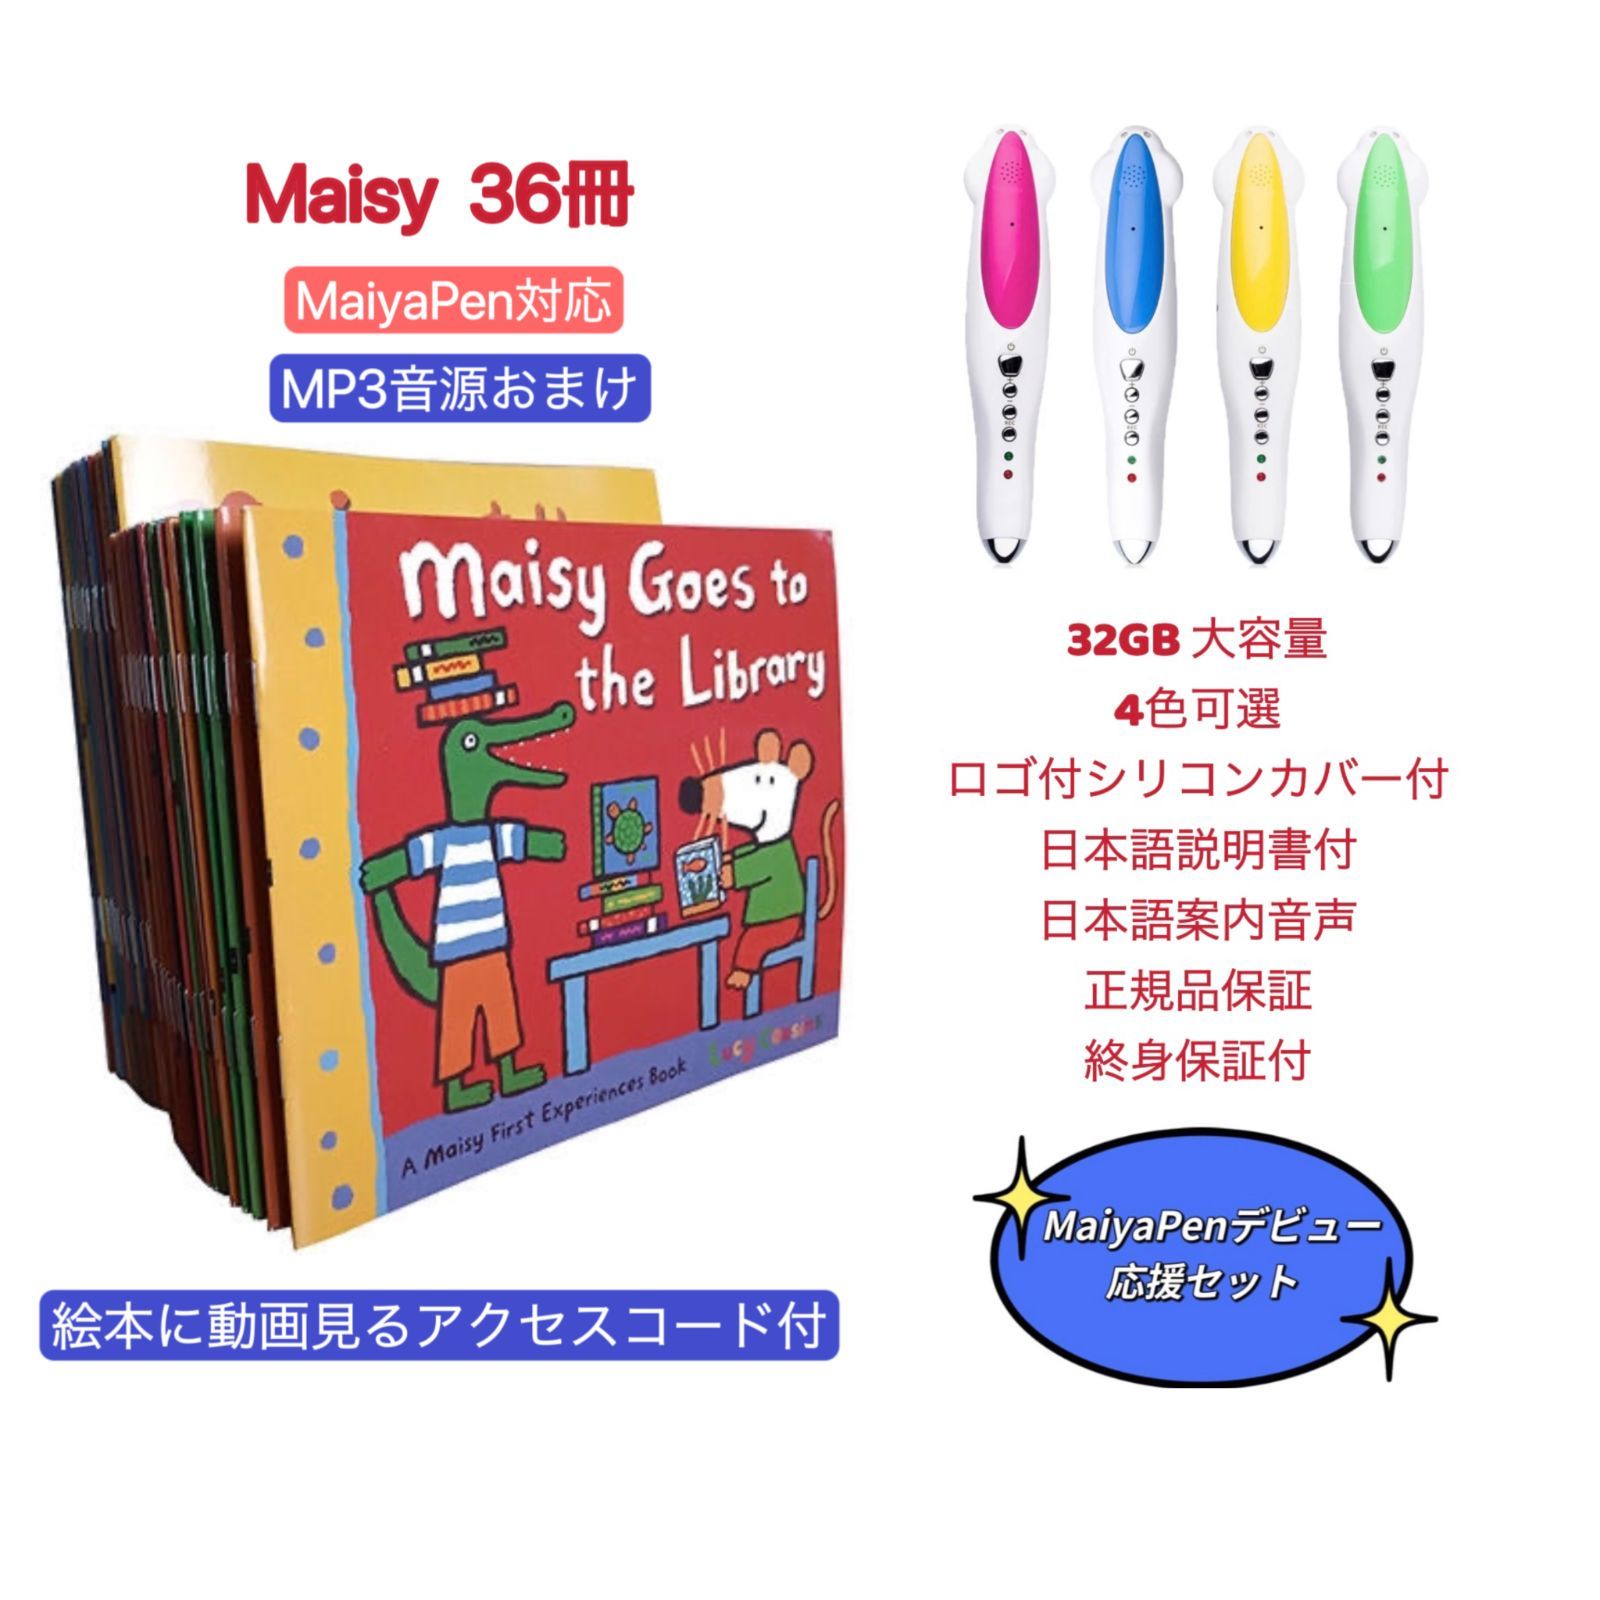 新品 Maisy メイシーちゃん 英語絵本 音源動画付 マイヤペン対応 絵本 